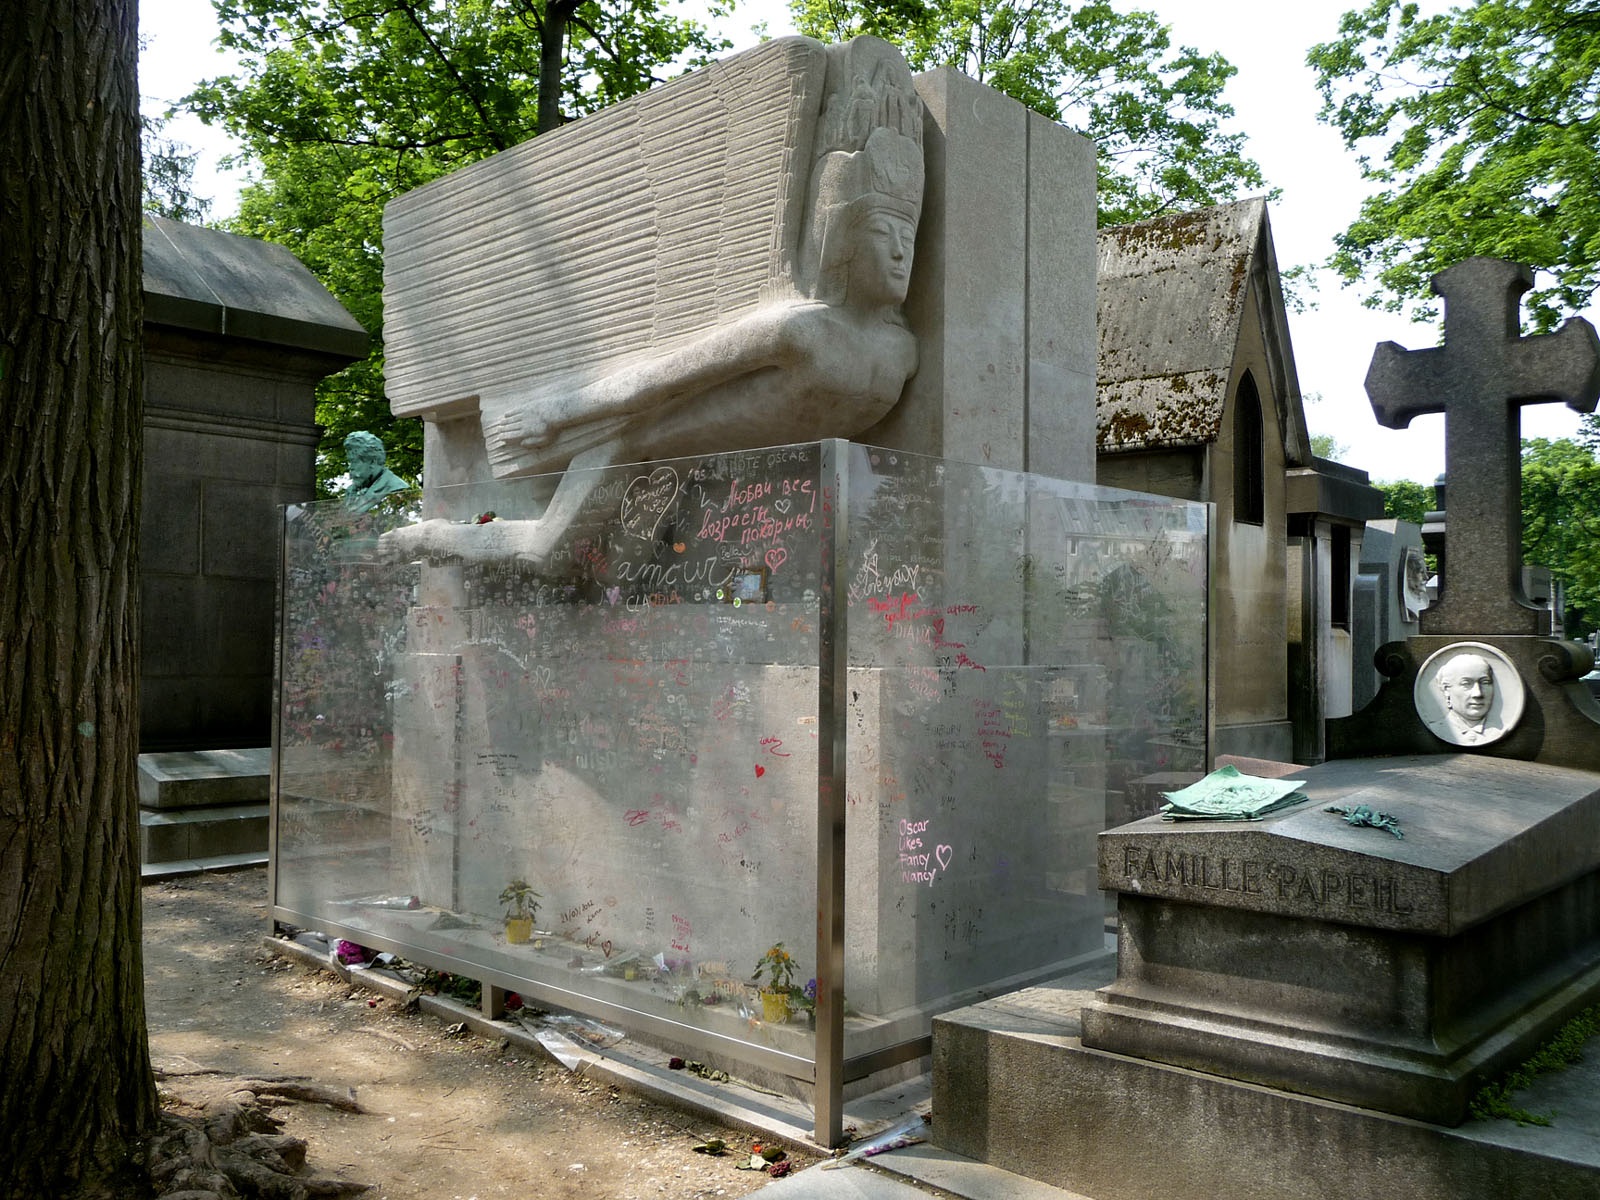 Kỳ lạ trào lưu hôn ngôi mộ với hình tượng khỏa thân suốt nhiều thập kỷ - Ảnh 4.